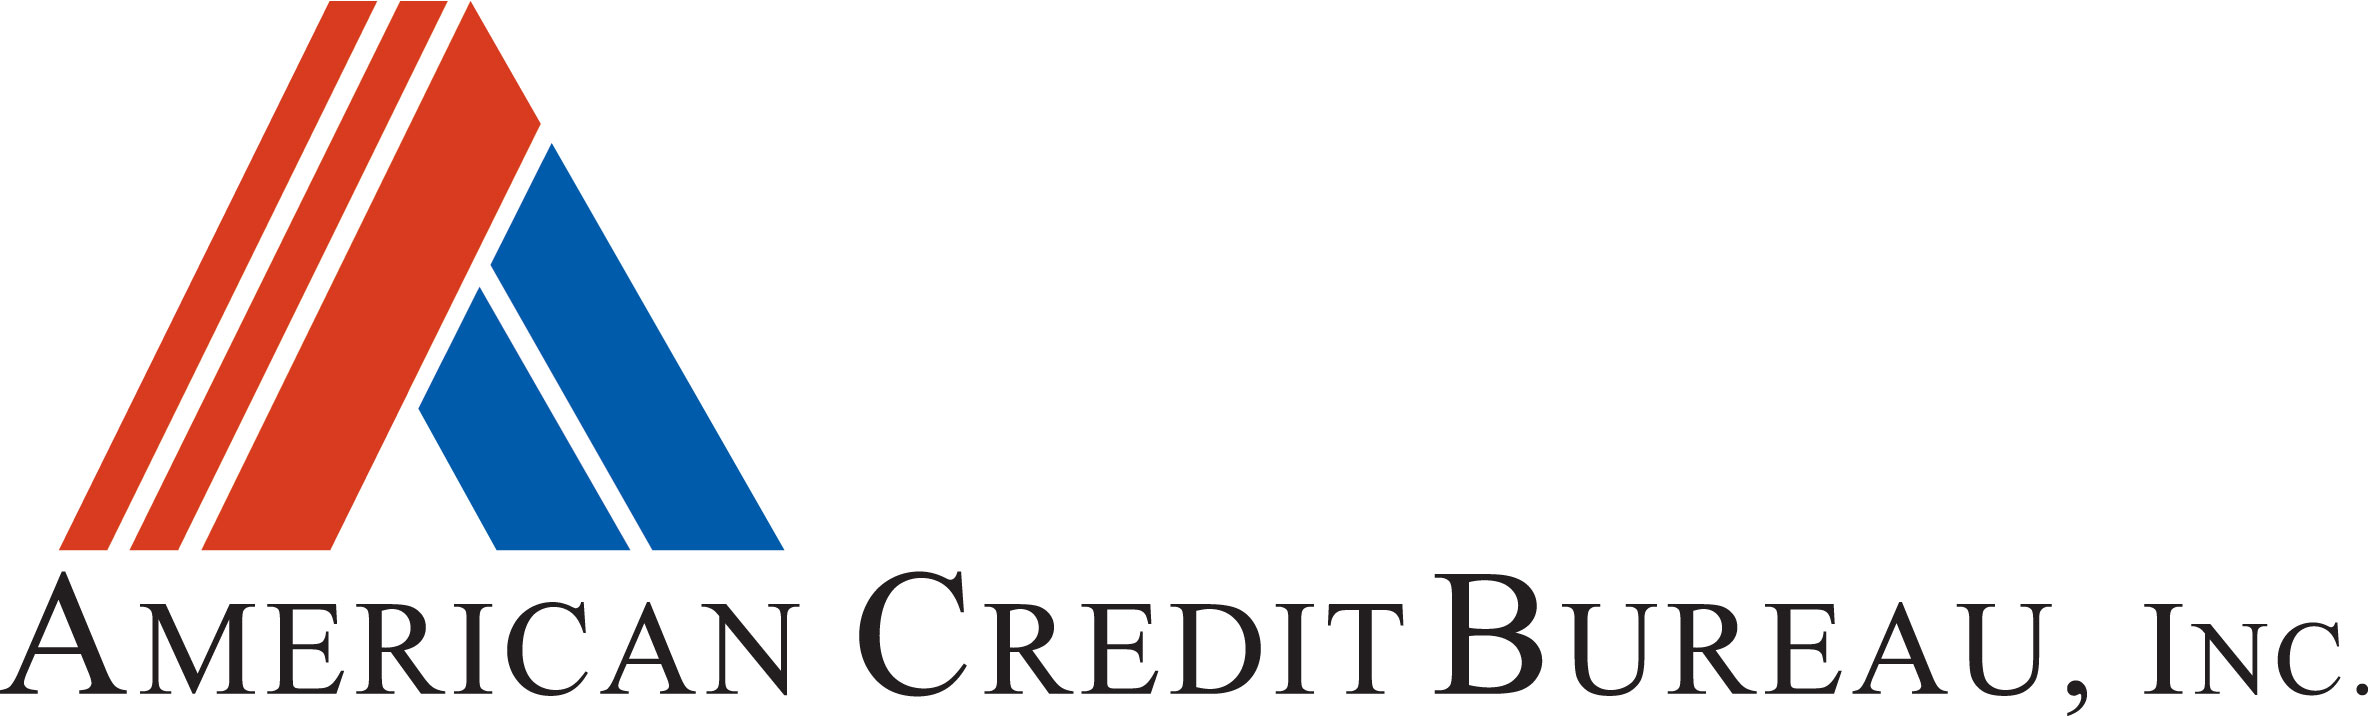 American Credit Bureau